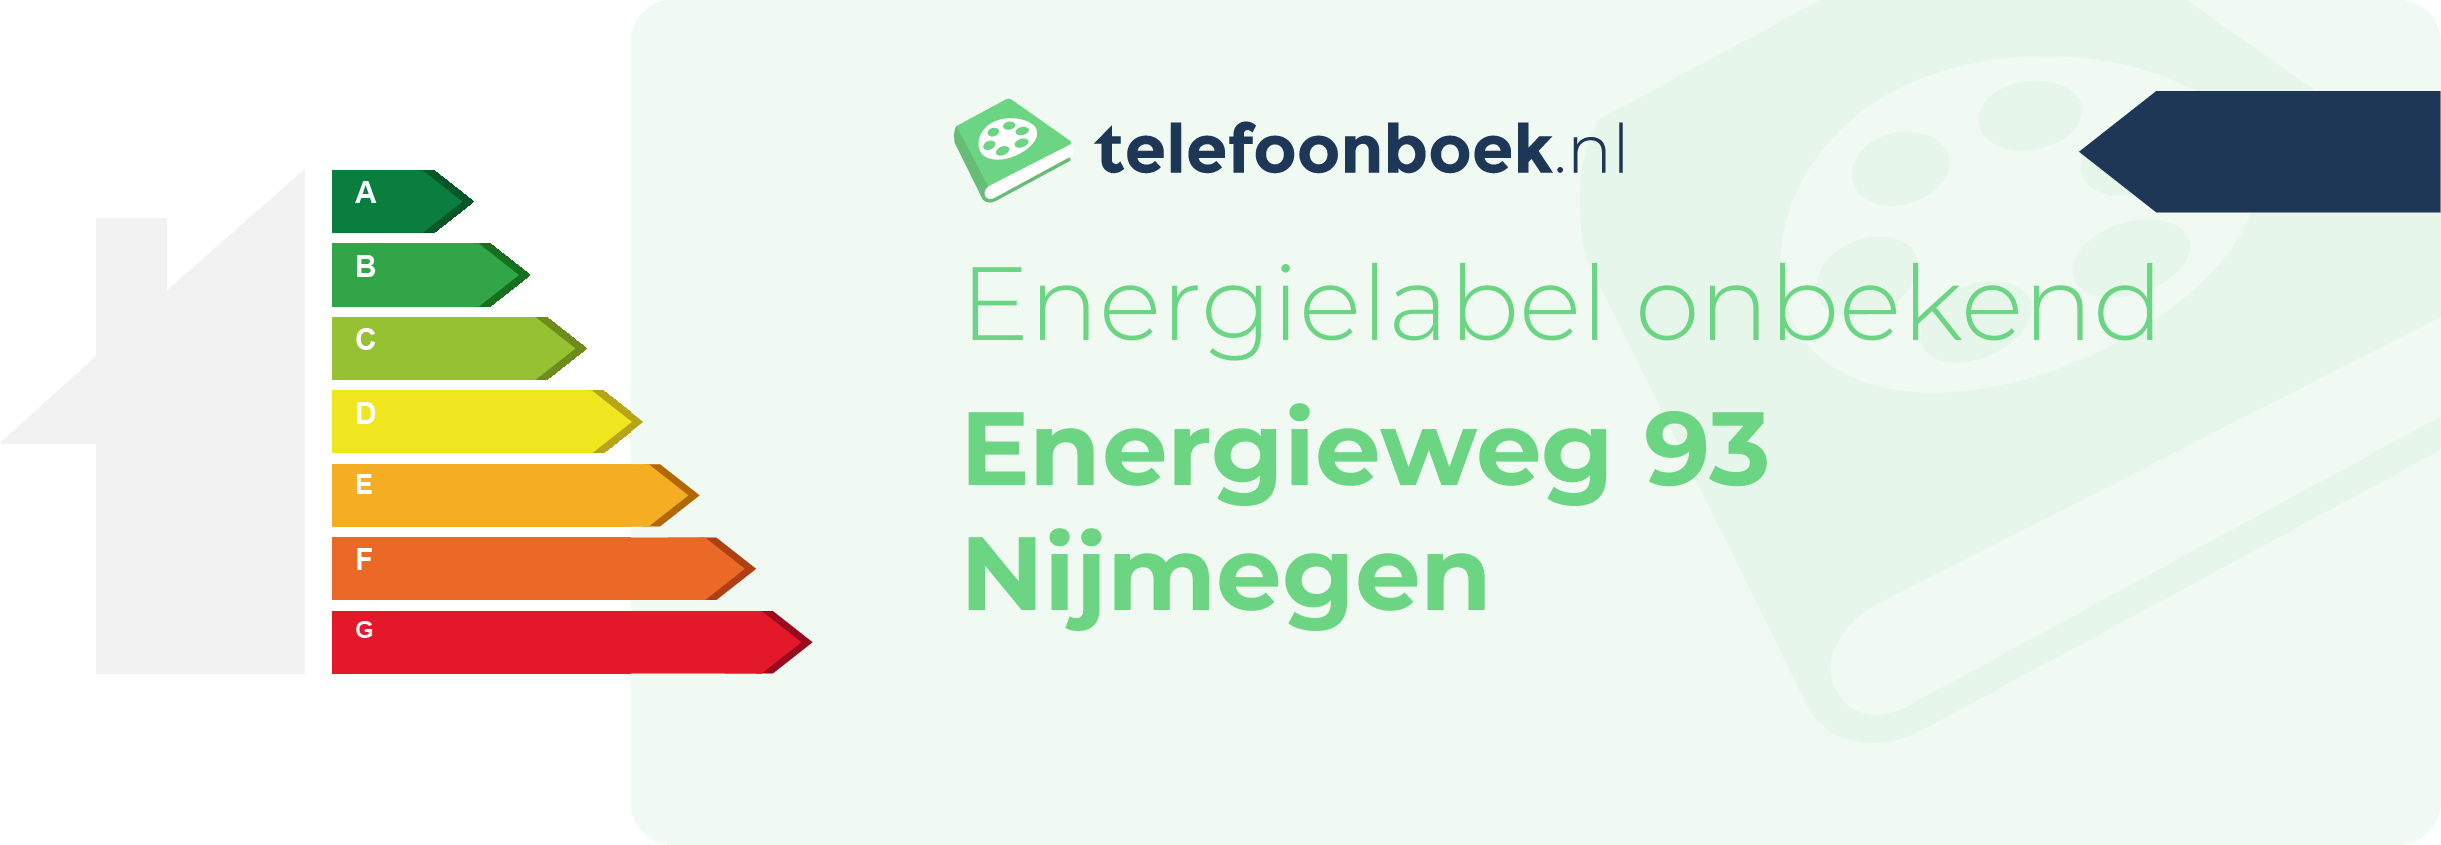 Energielabel Energieweg 93 Nijmegen